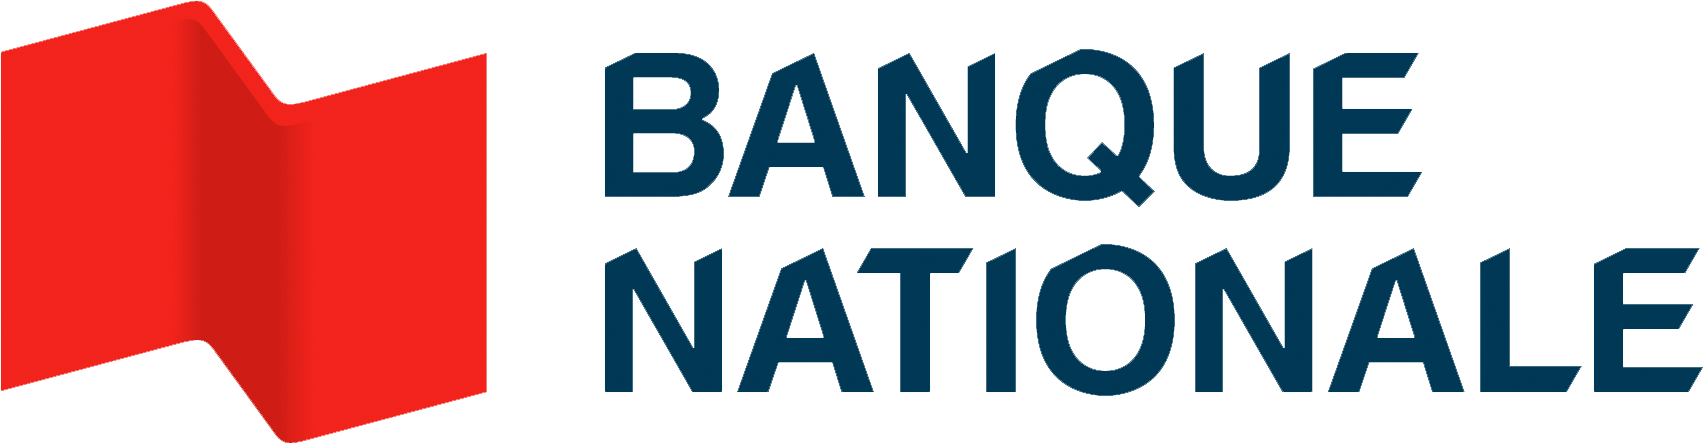 Logo rouge et bleu avec texte “Banque Nationale”. Design moderne et épuré.